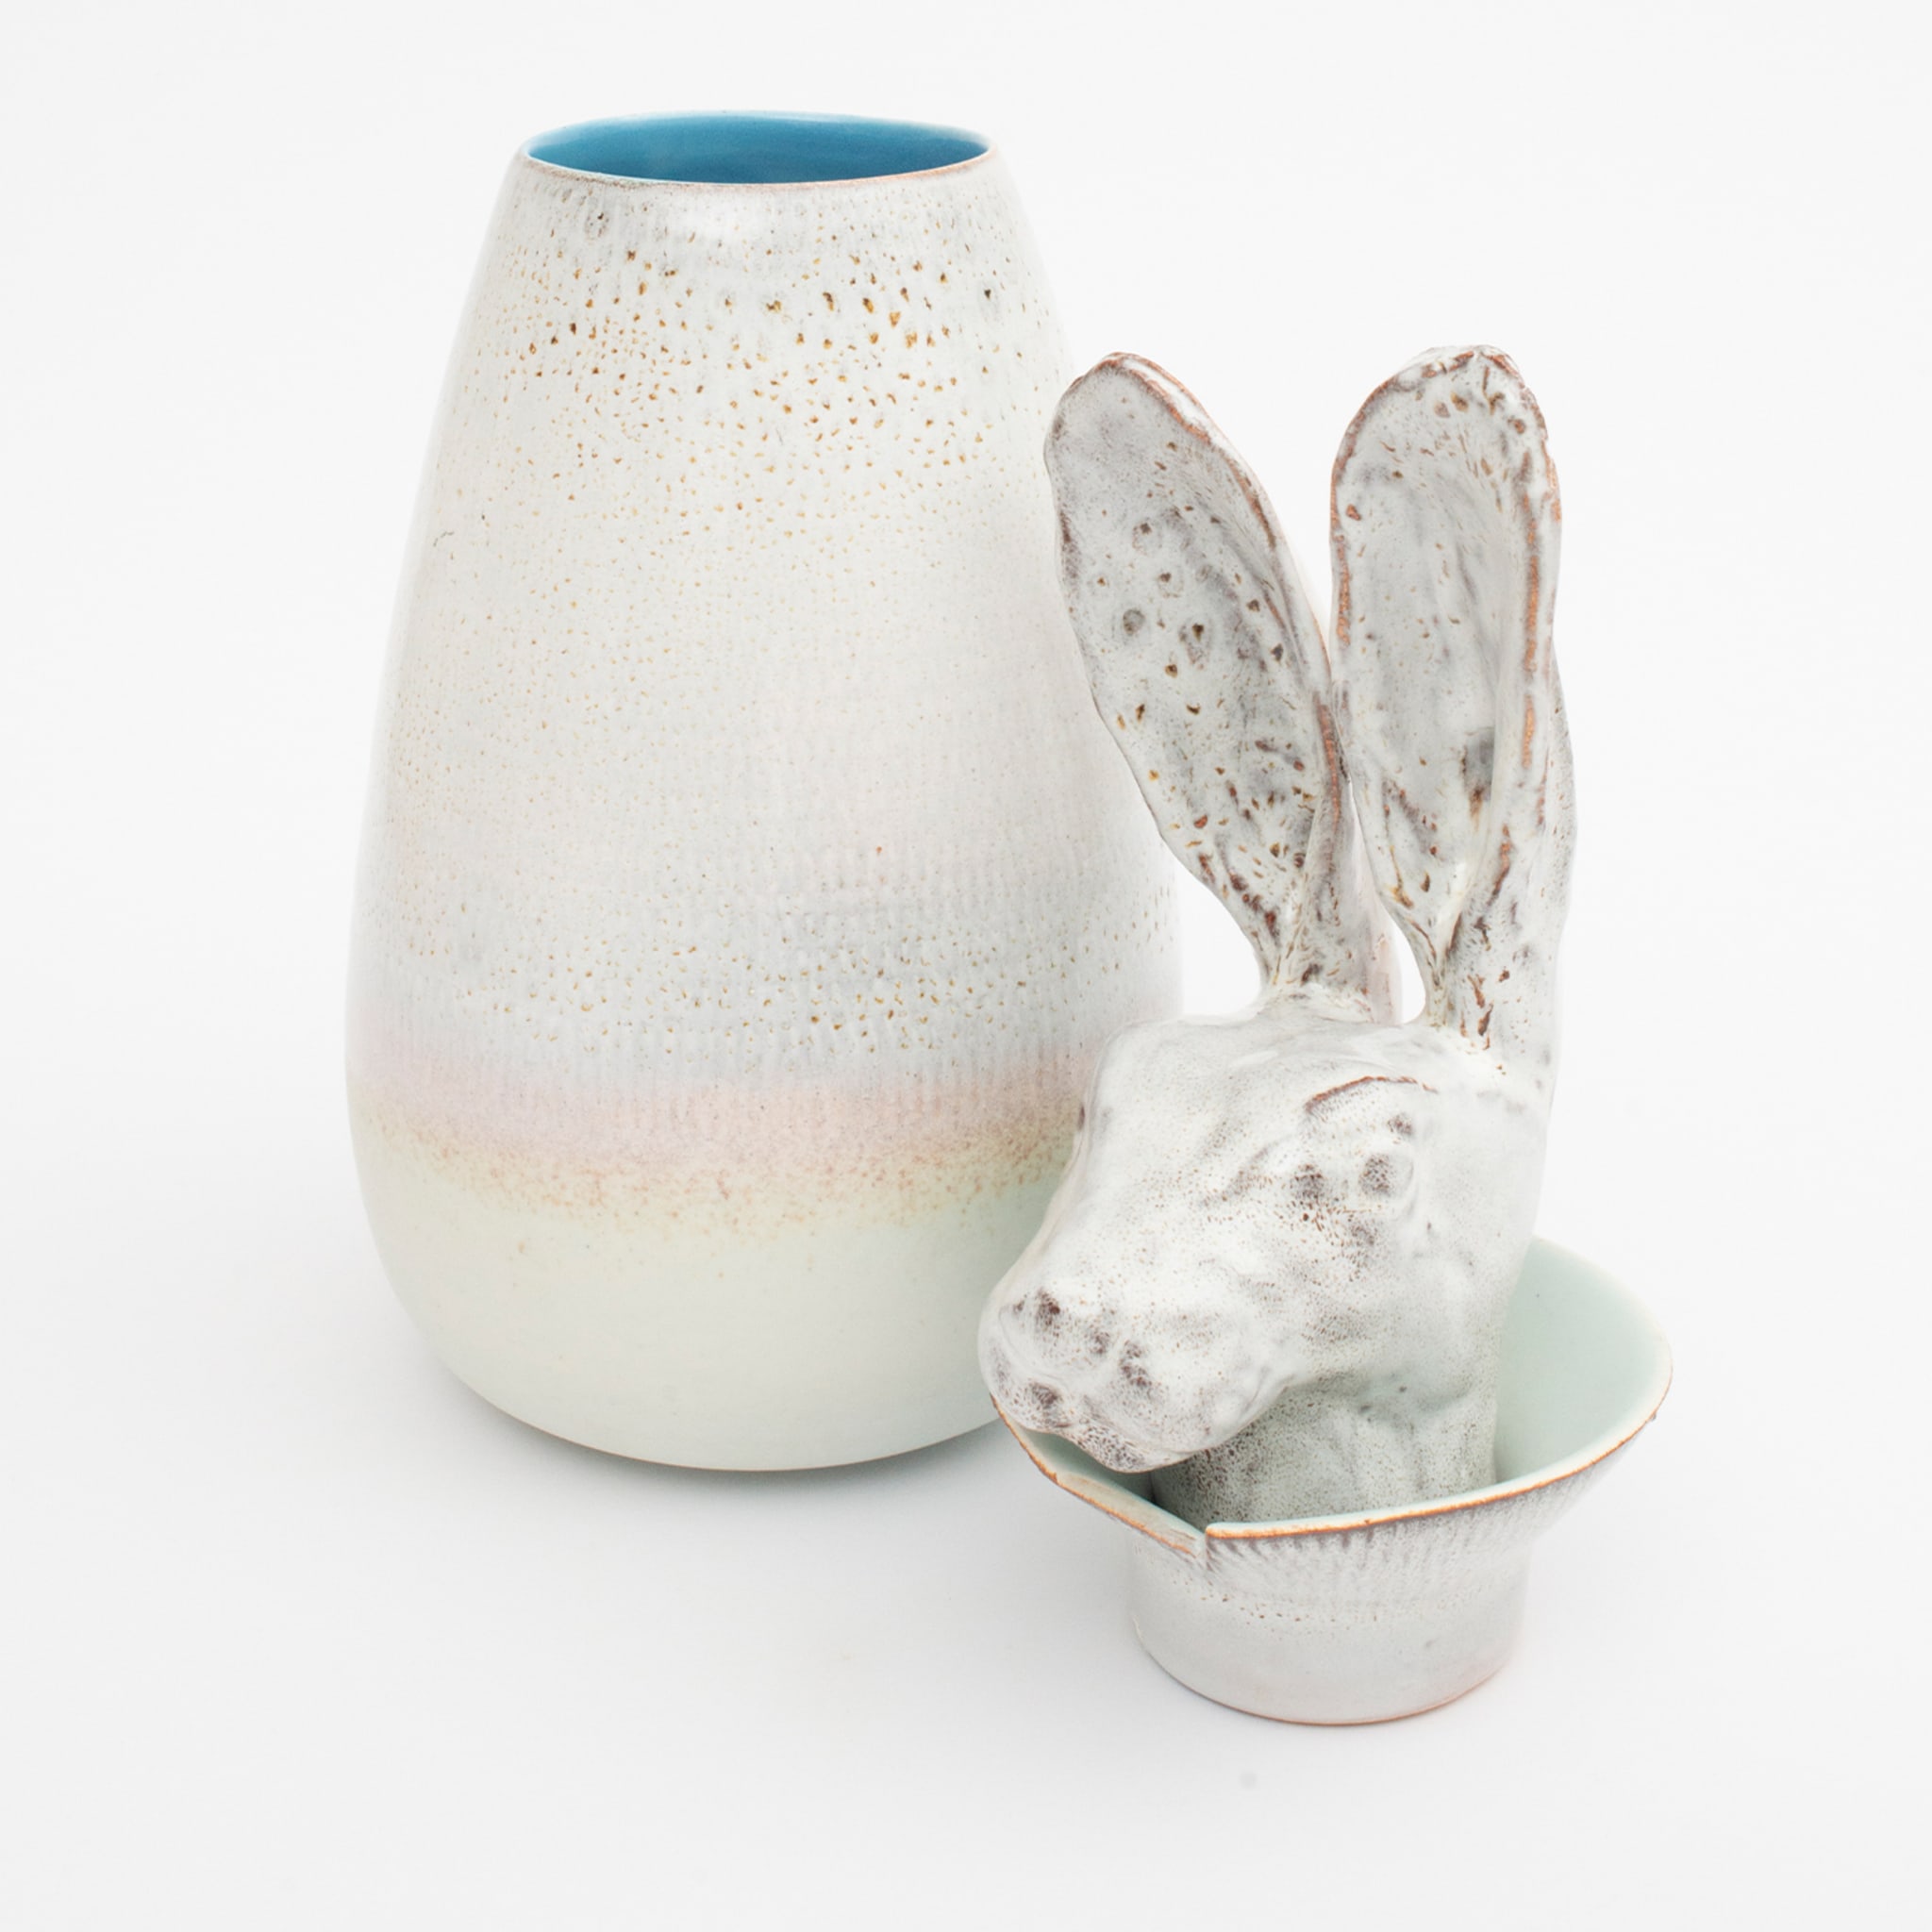 Canopo rabbit vase - Alternative view 1